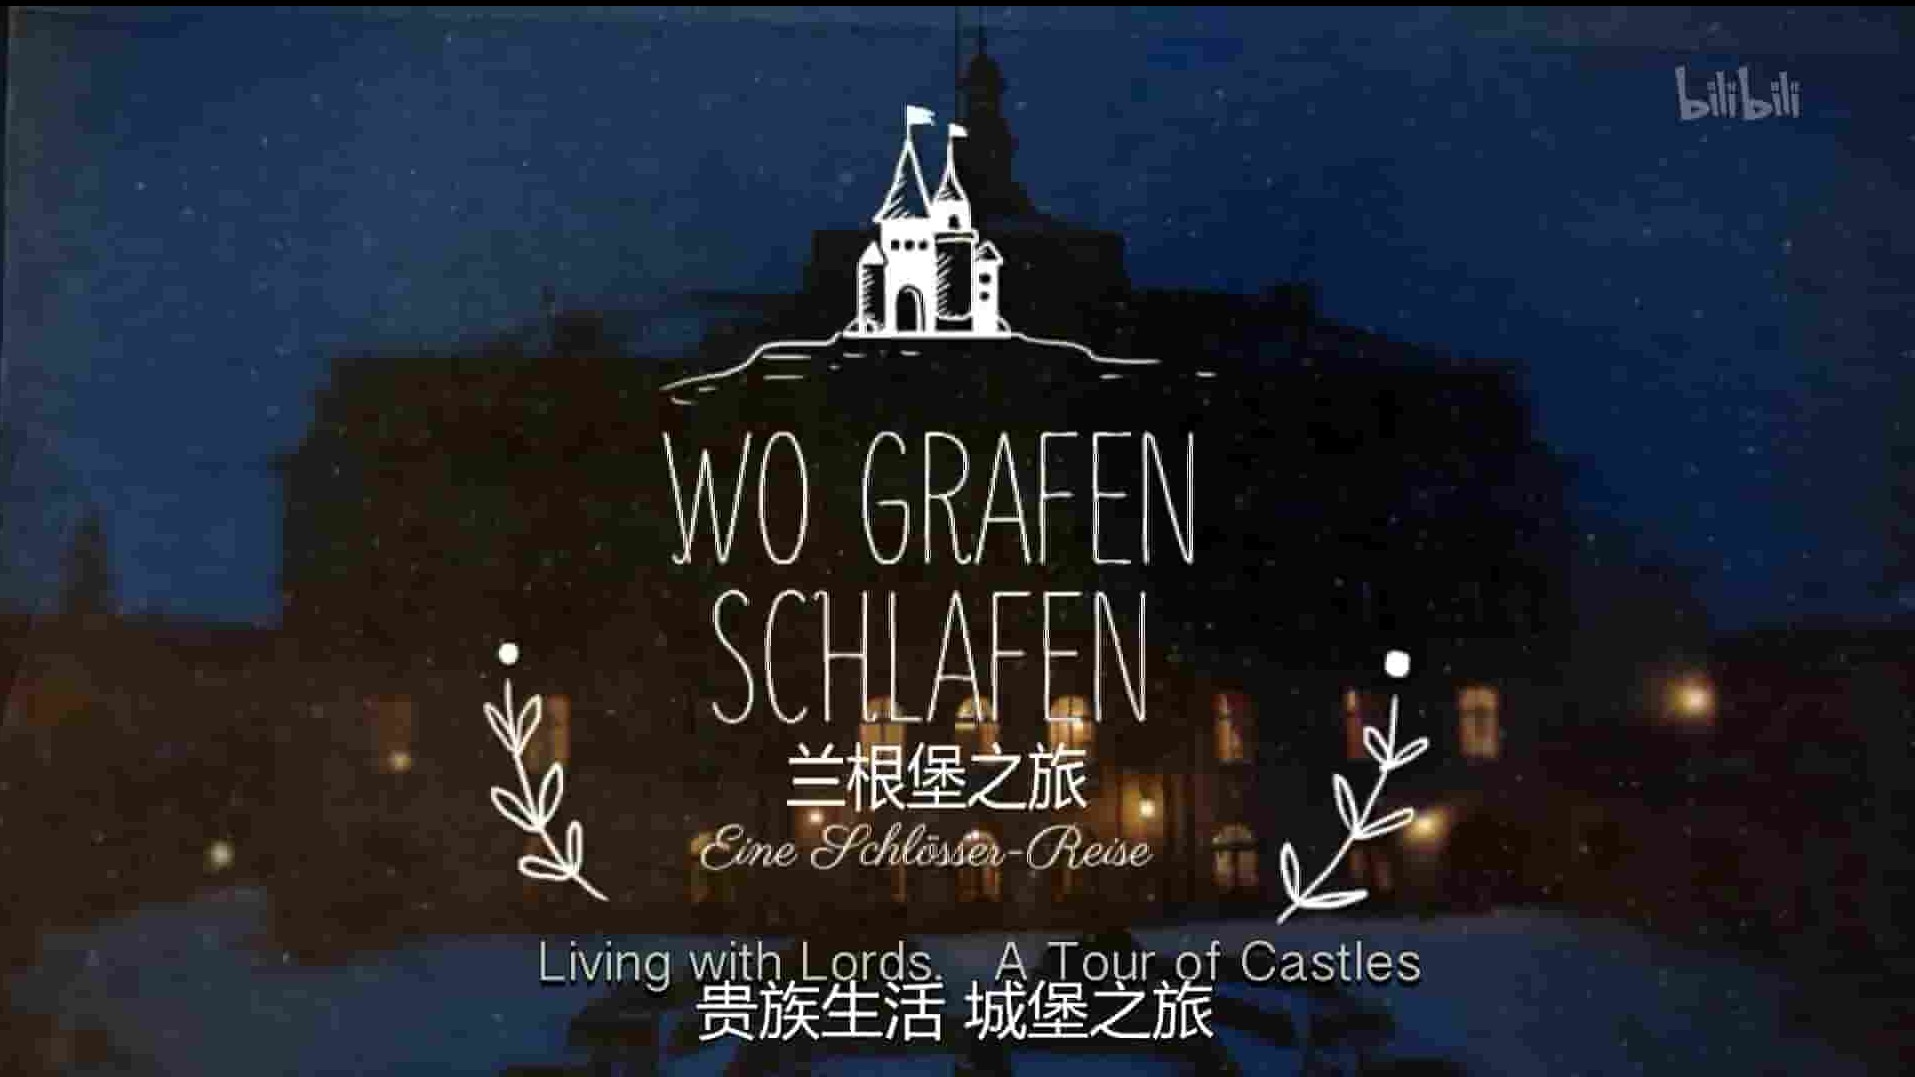 奥地利纪录片《兰根堡之旅 Wo Grafen Schlafen 2014》全1集 英语中字 1080P高清网盘下载